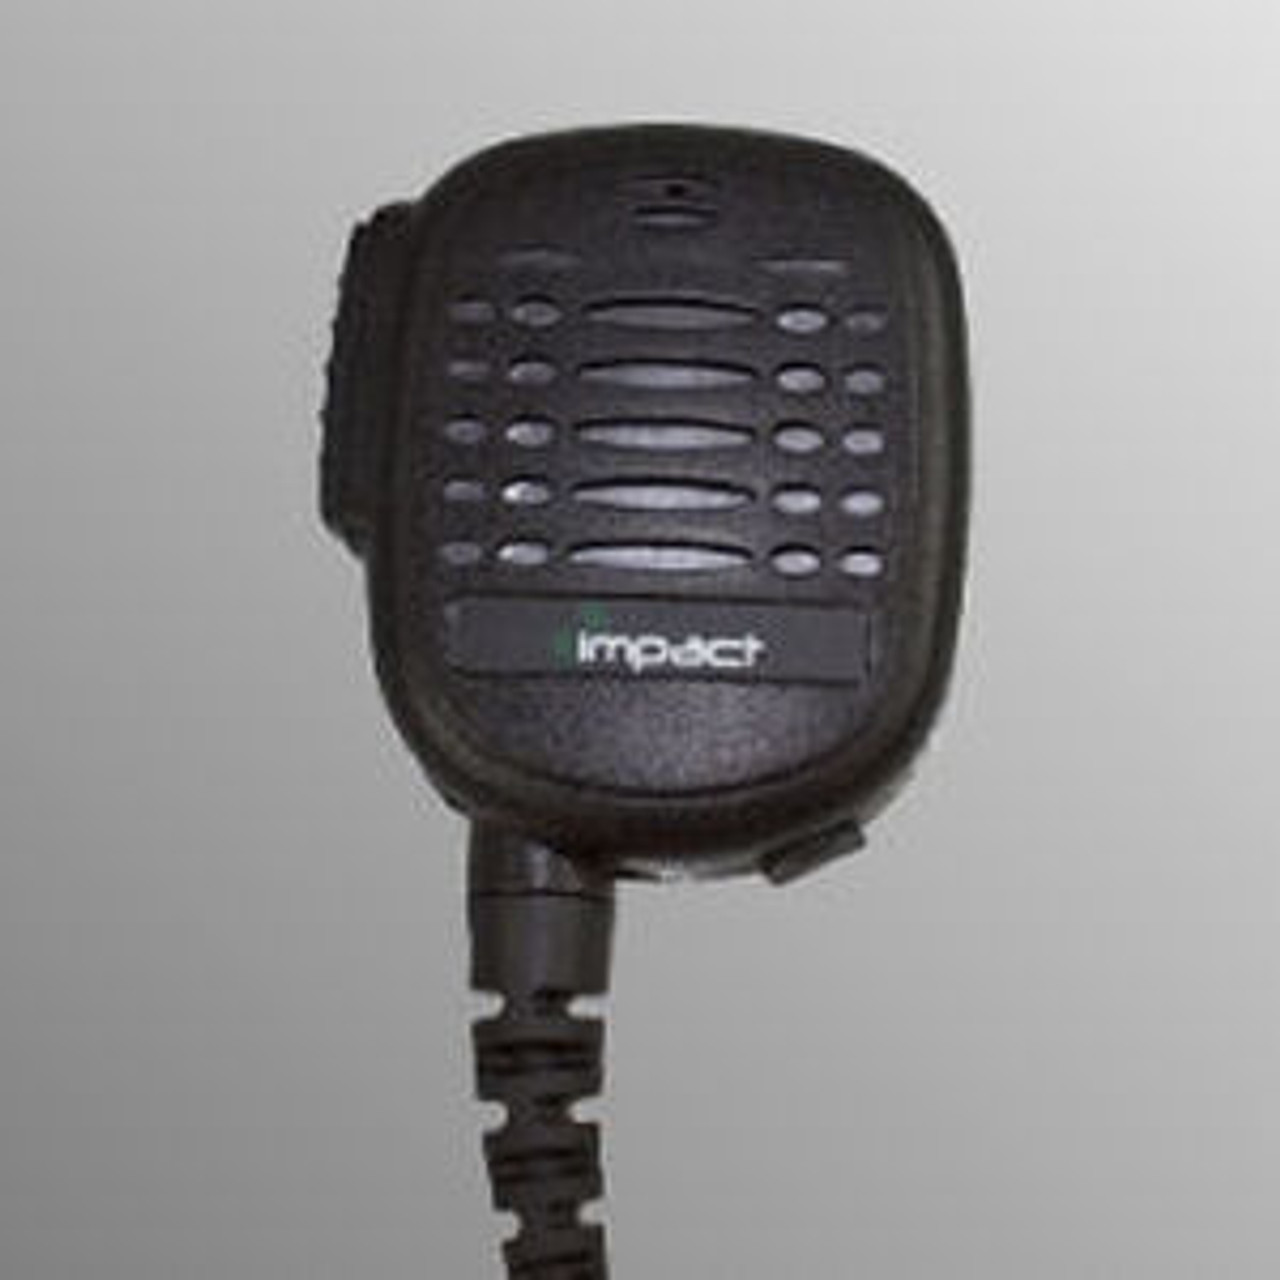 EF Johnson VP5230 Noise Canceling Speaker Mic.